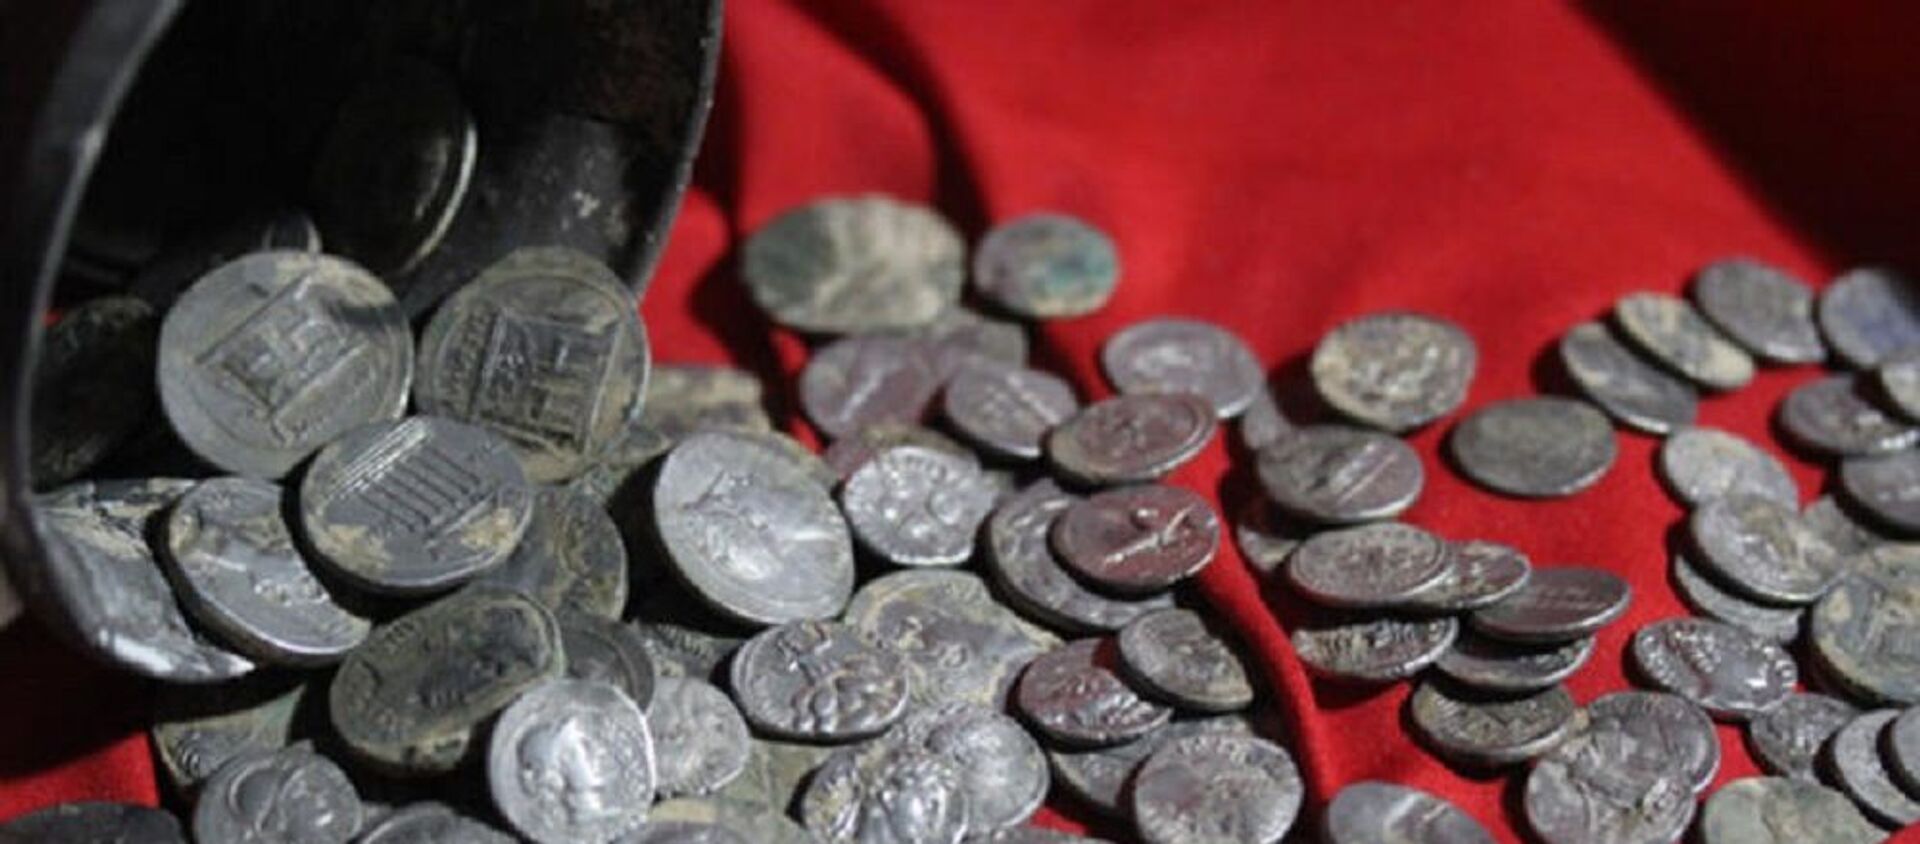 Kütahya'da bulunan 651 gümüş sikke Anadolu Medeniyetleri Müzesi'nde sergilenmeye başlandı - Sputnik Türkiye, 1920, 27.01.2021